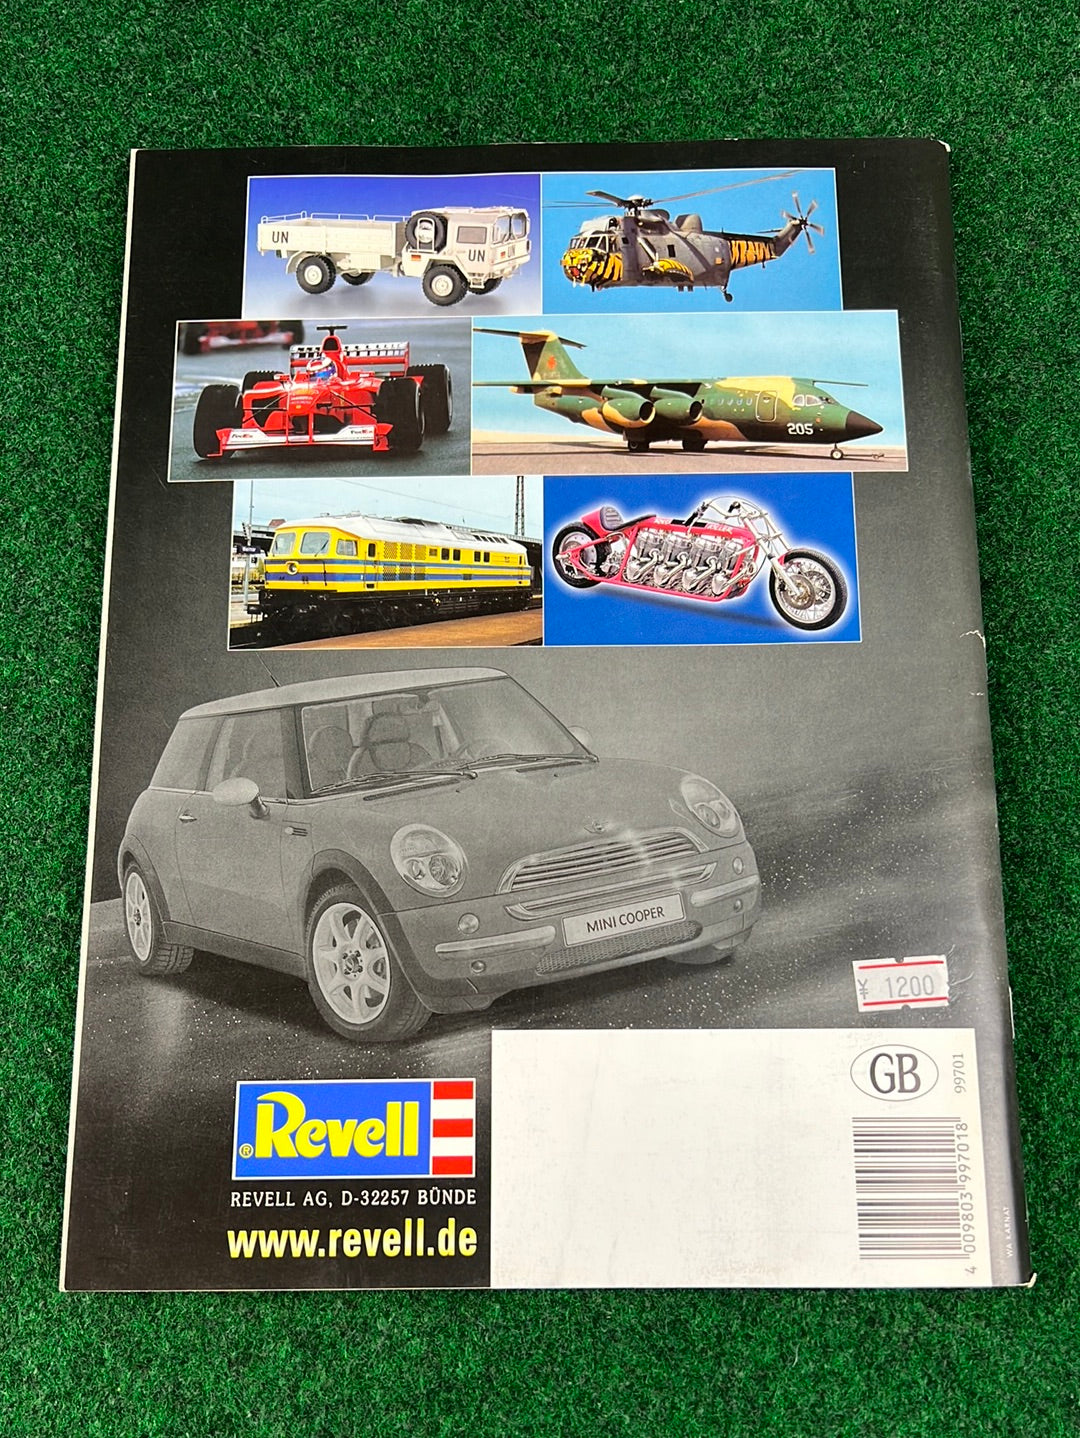 Revell - Model Kit Collection Catalog 2001-2002